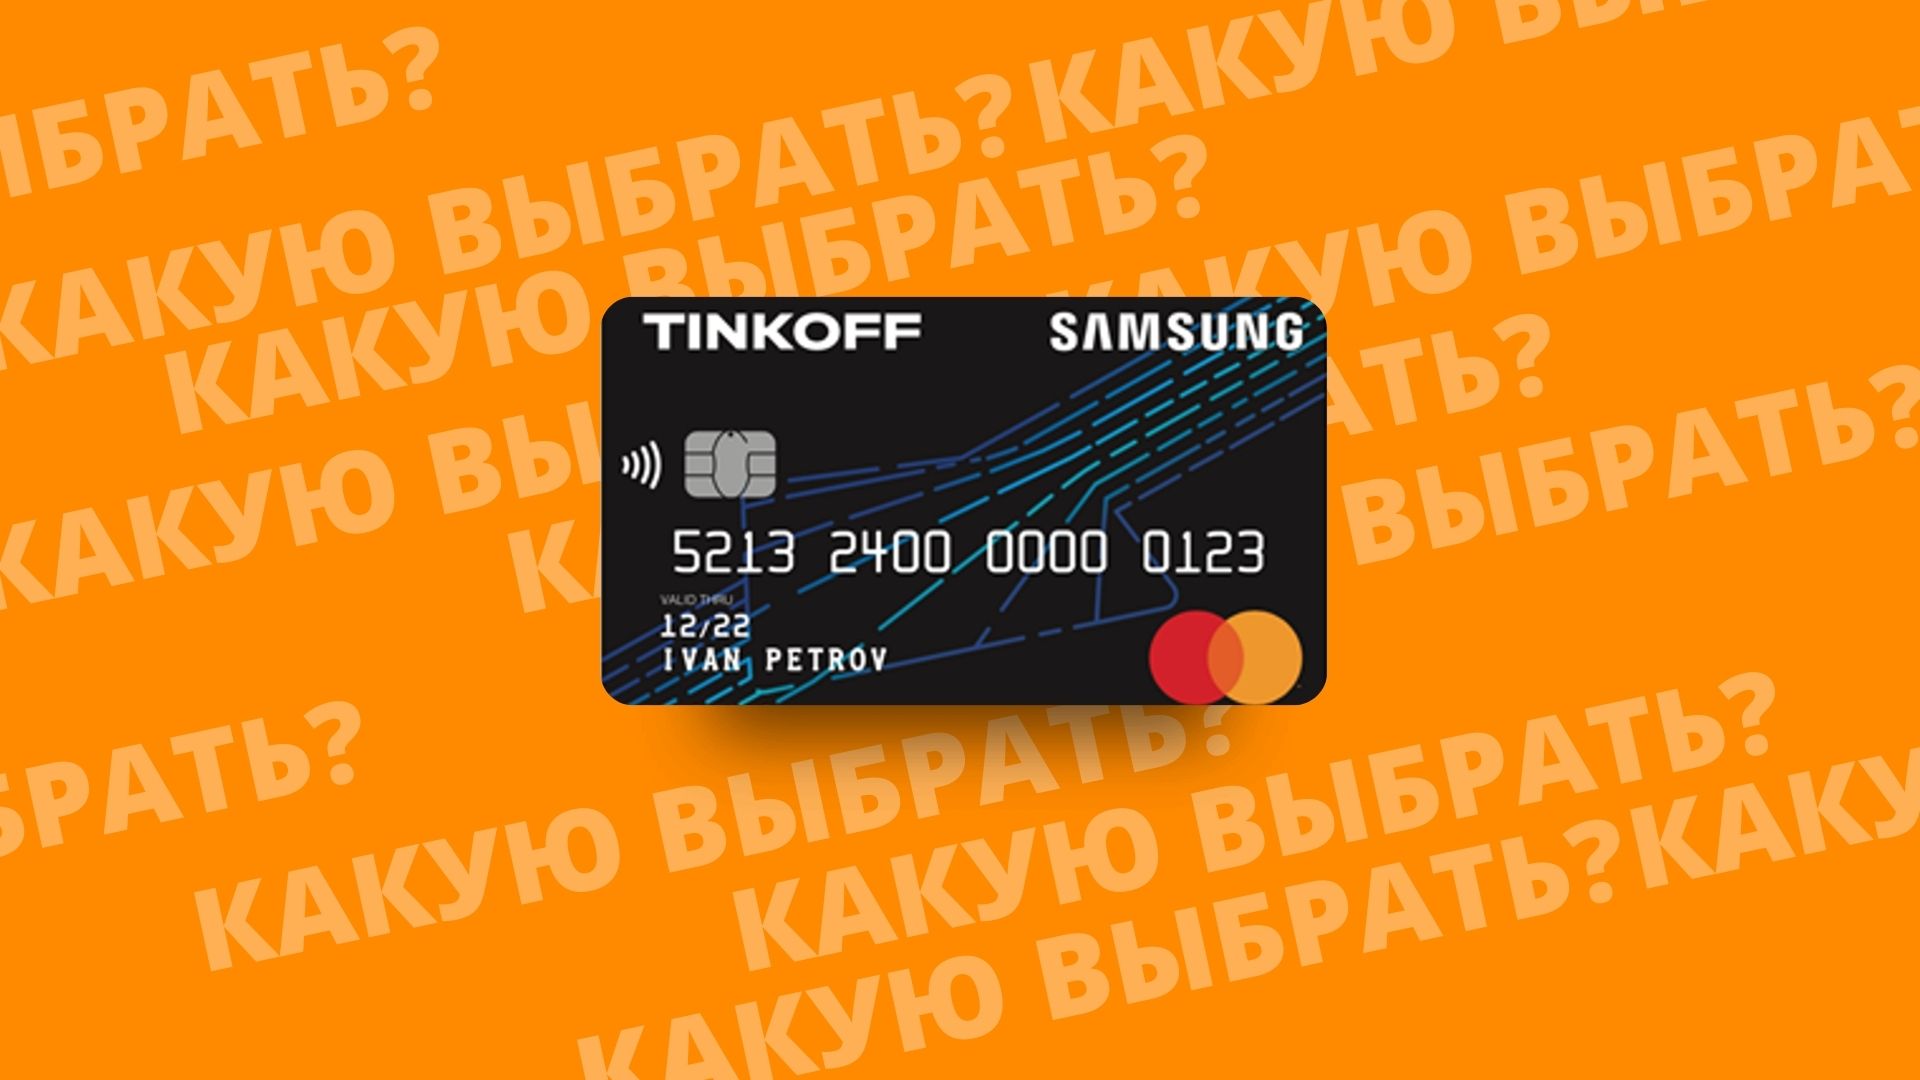 SUMSUNG кэшбэк дебетовая карта банка Тинькофф. Почему стоит выбрать